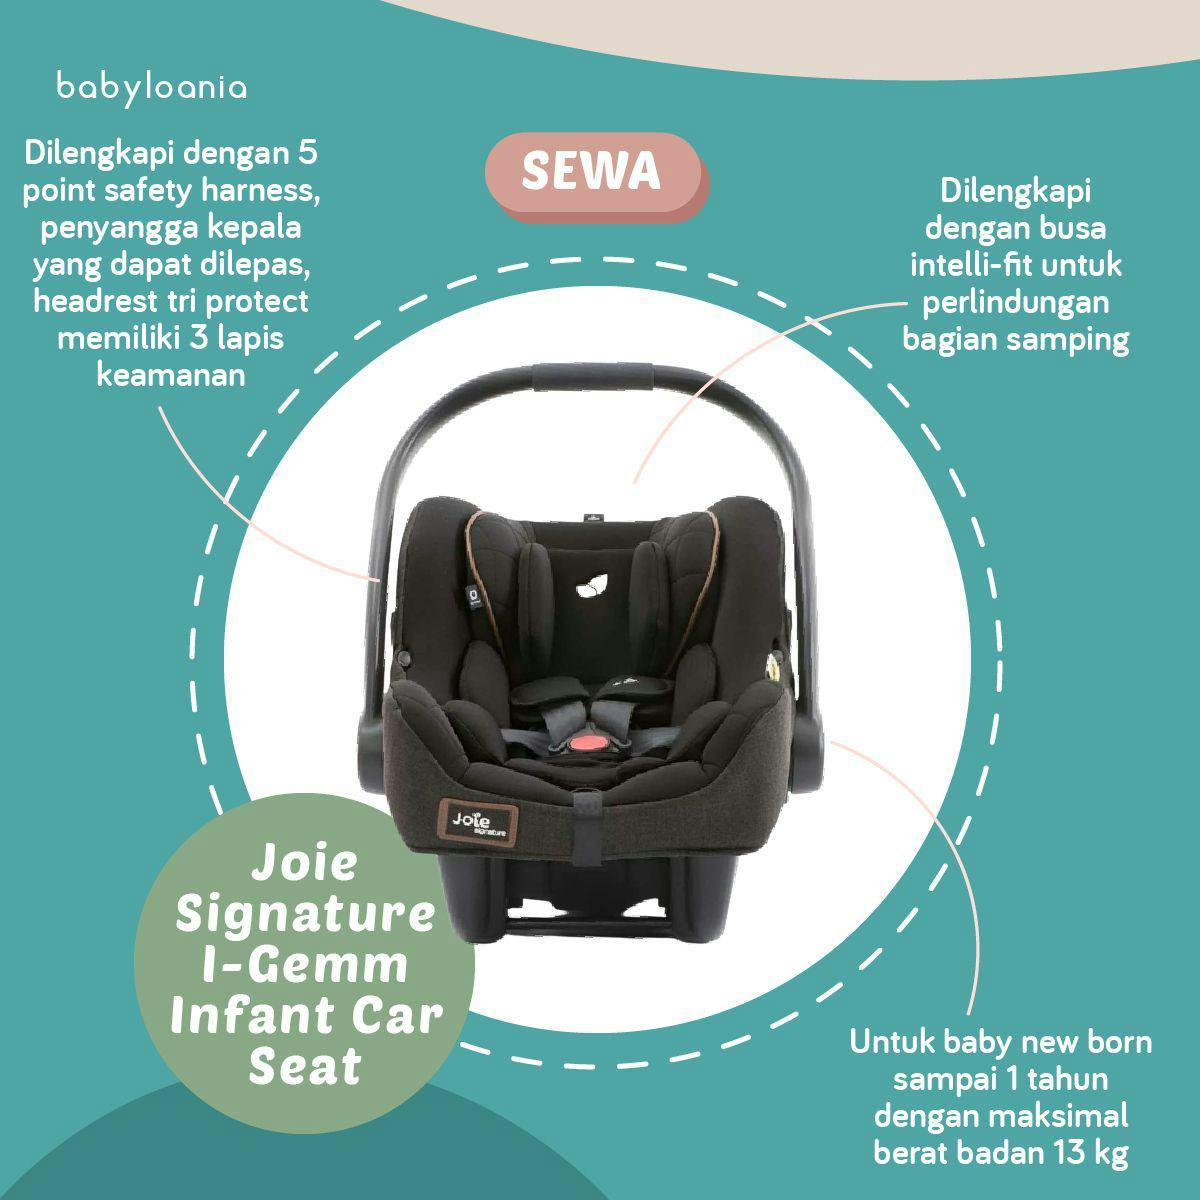 I-Gemm Infant Car Seat